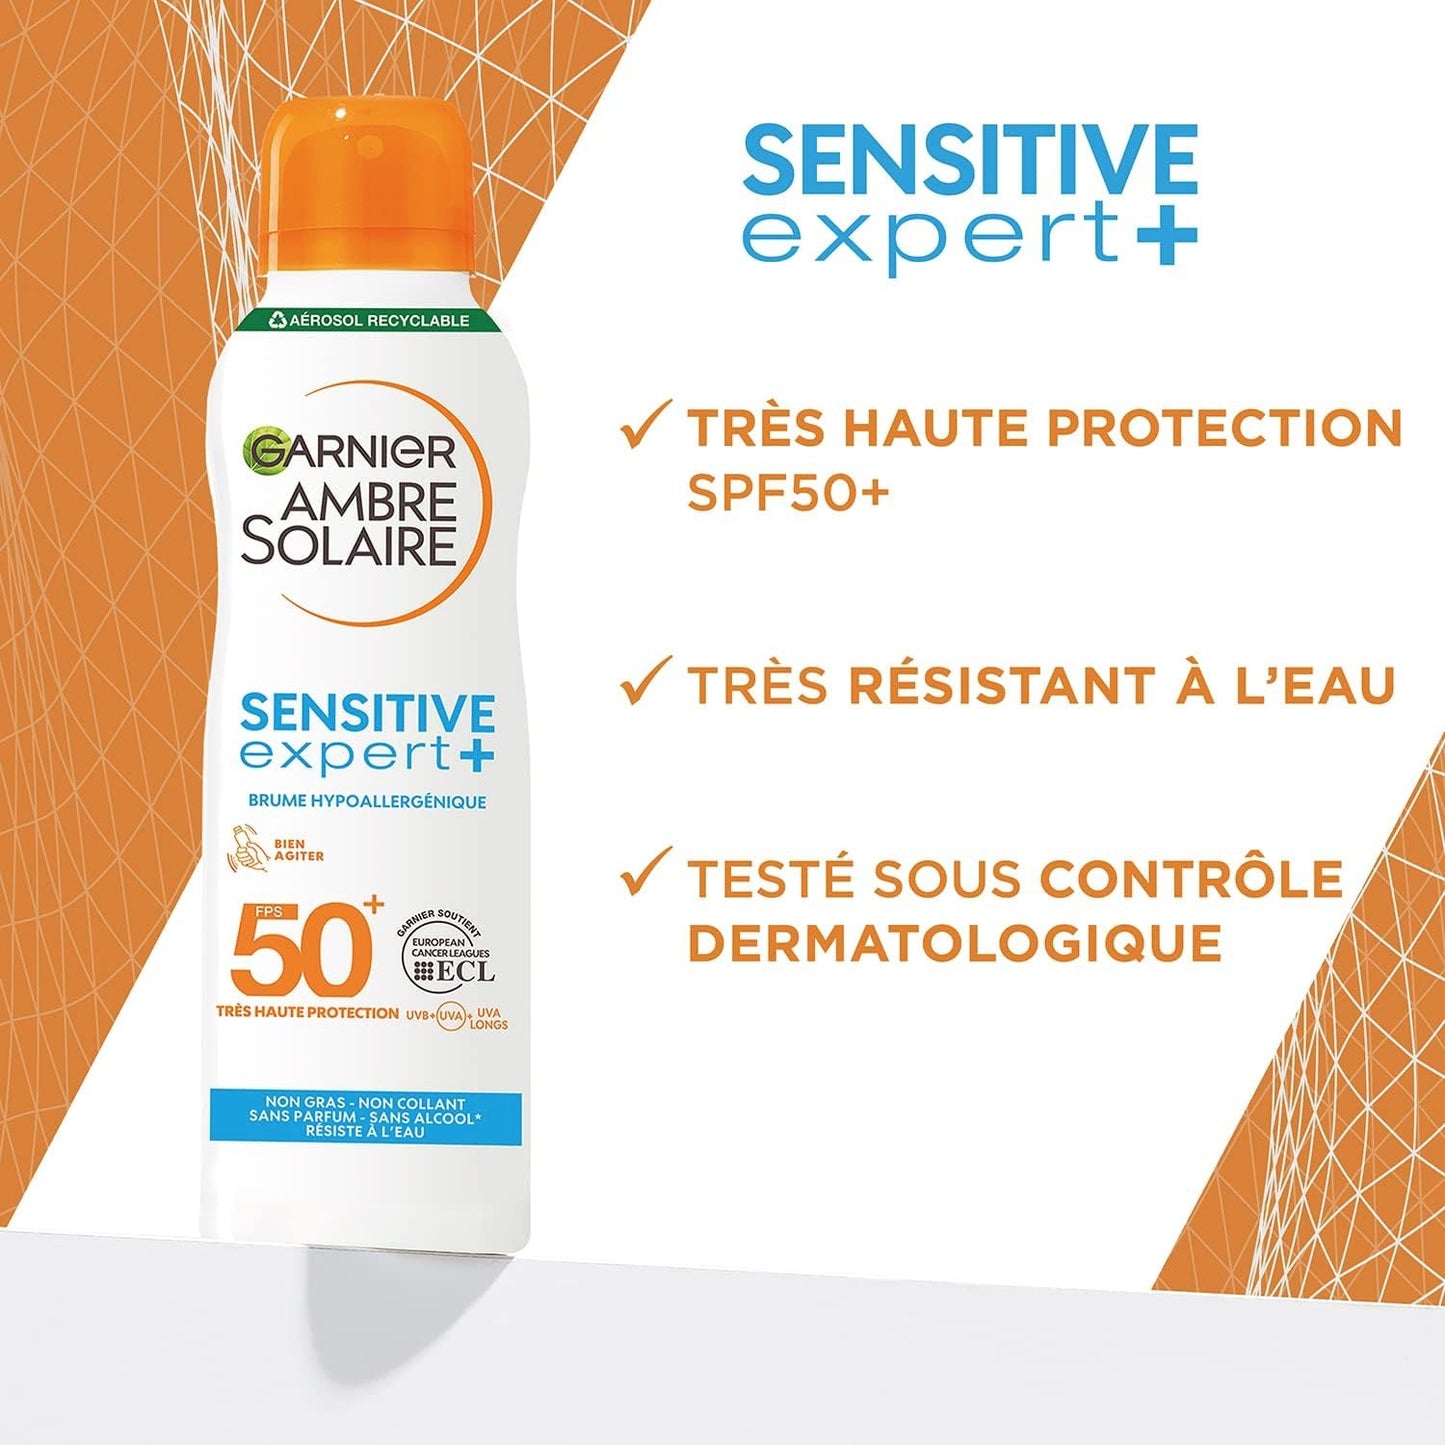 Garnier Ambre Solaire Sensitive Expert + Adulte Brume protectrice très haute protection hypoallergénique FPS50+